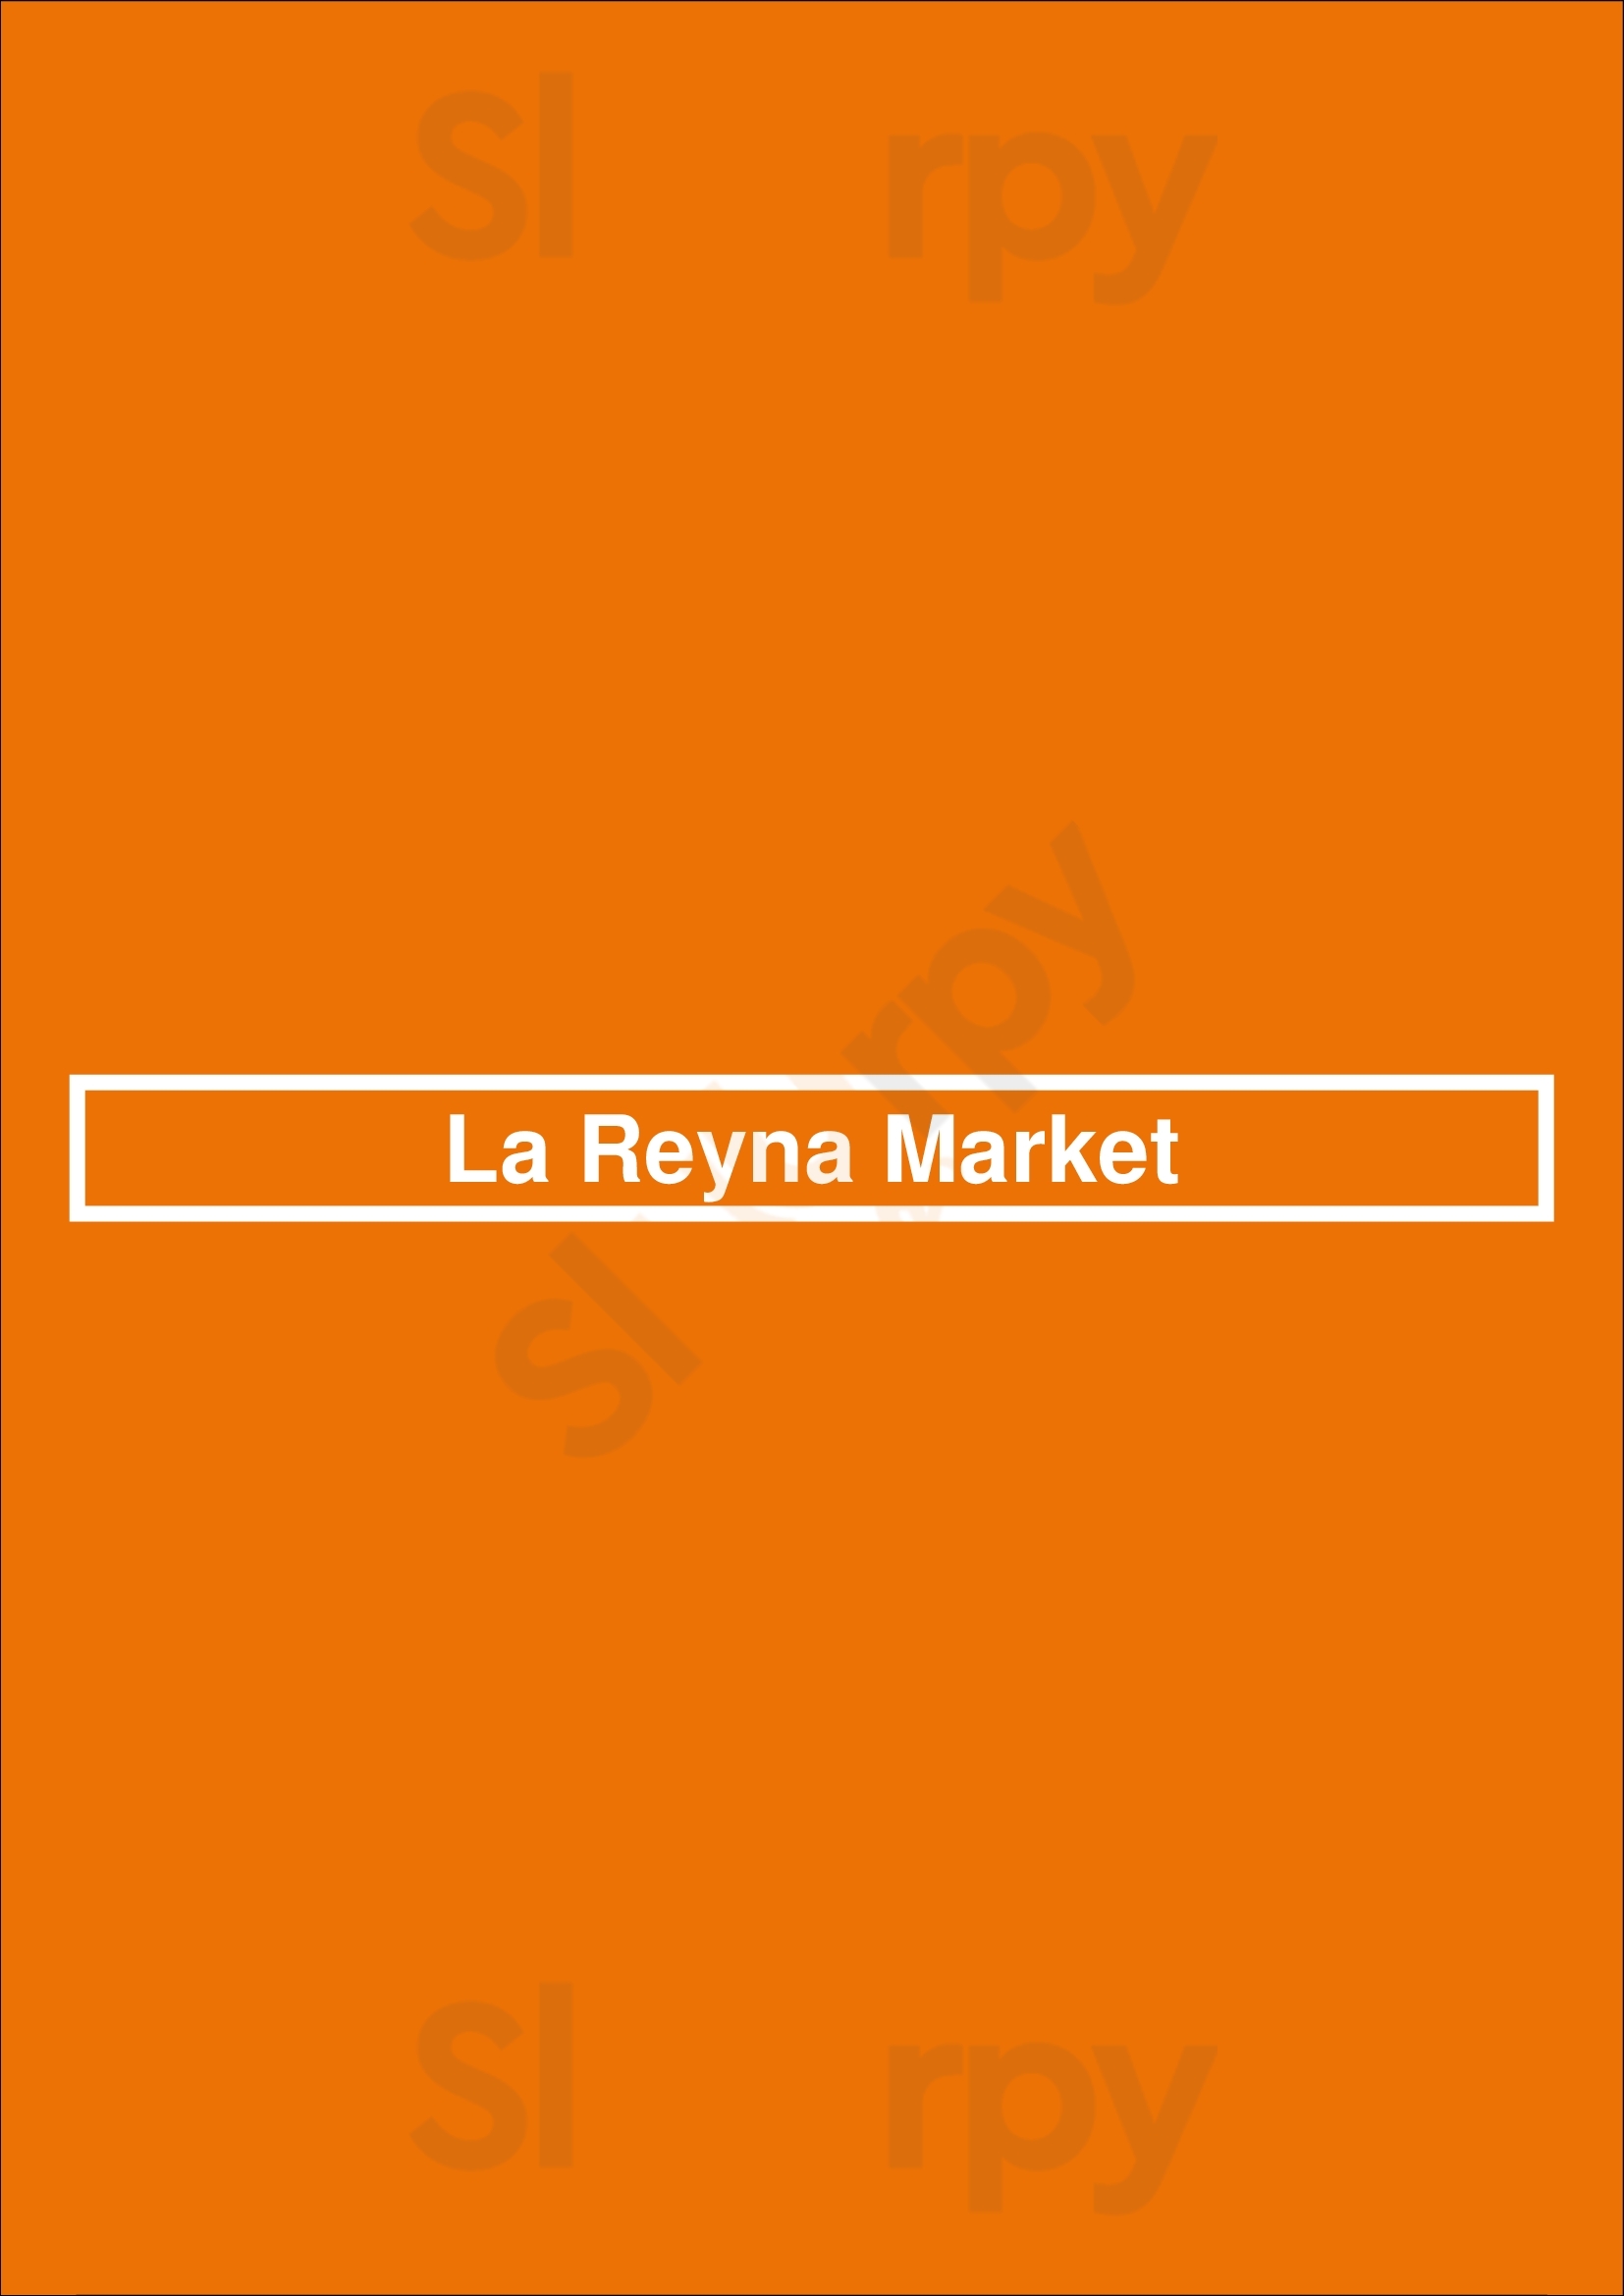 La Reyna Market Paso Robles Menu - 1